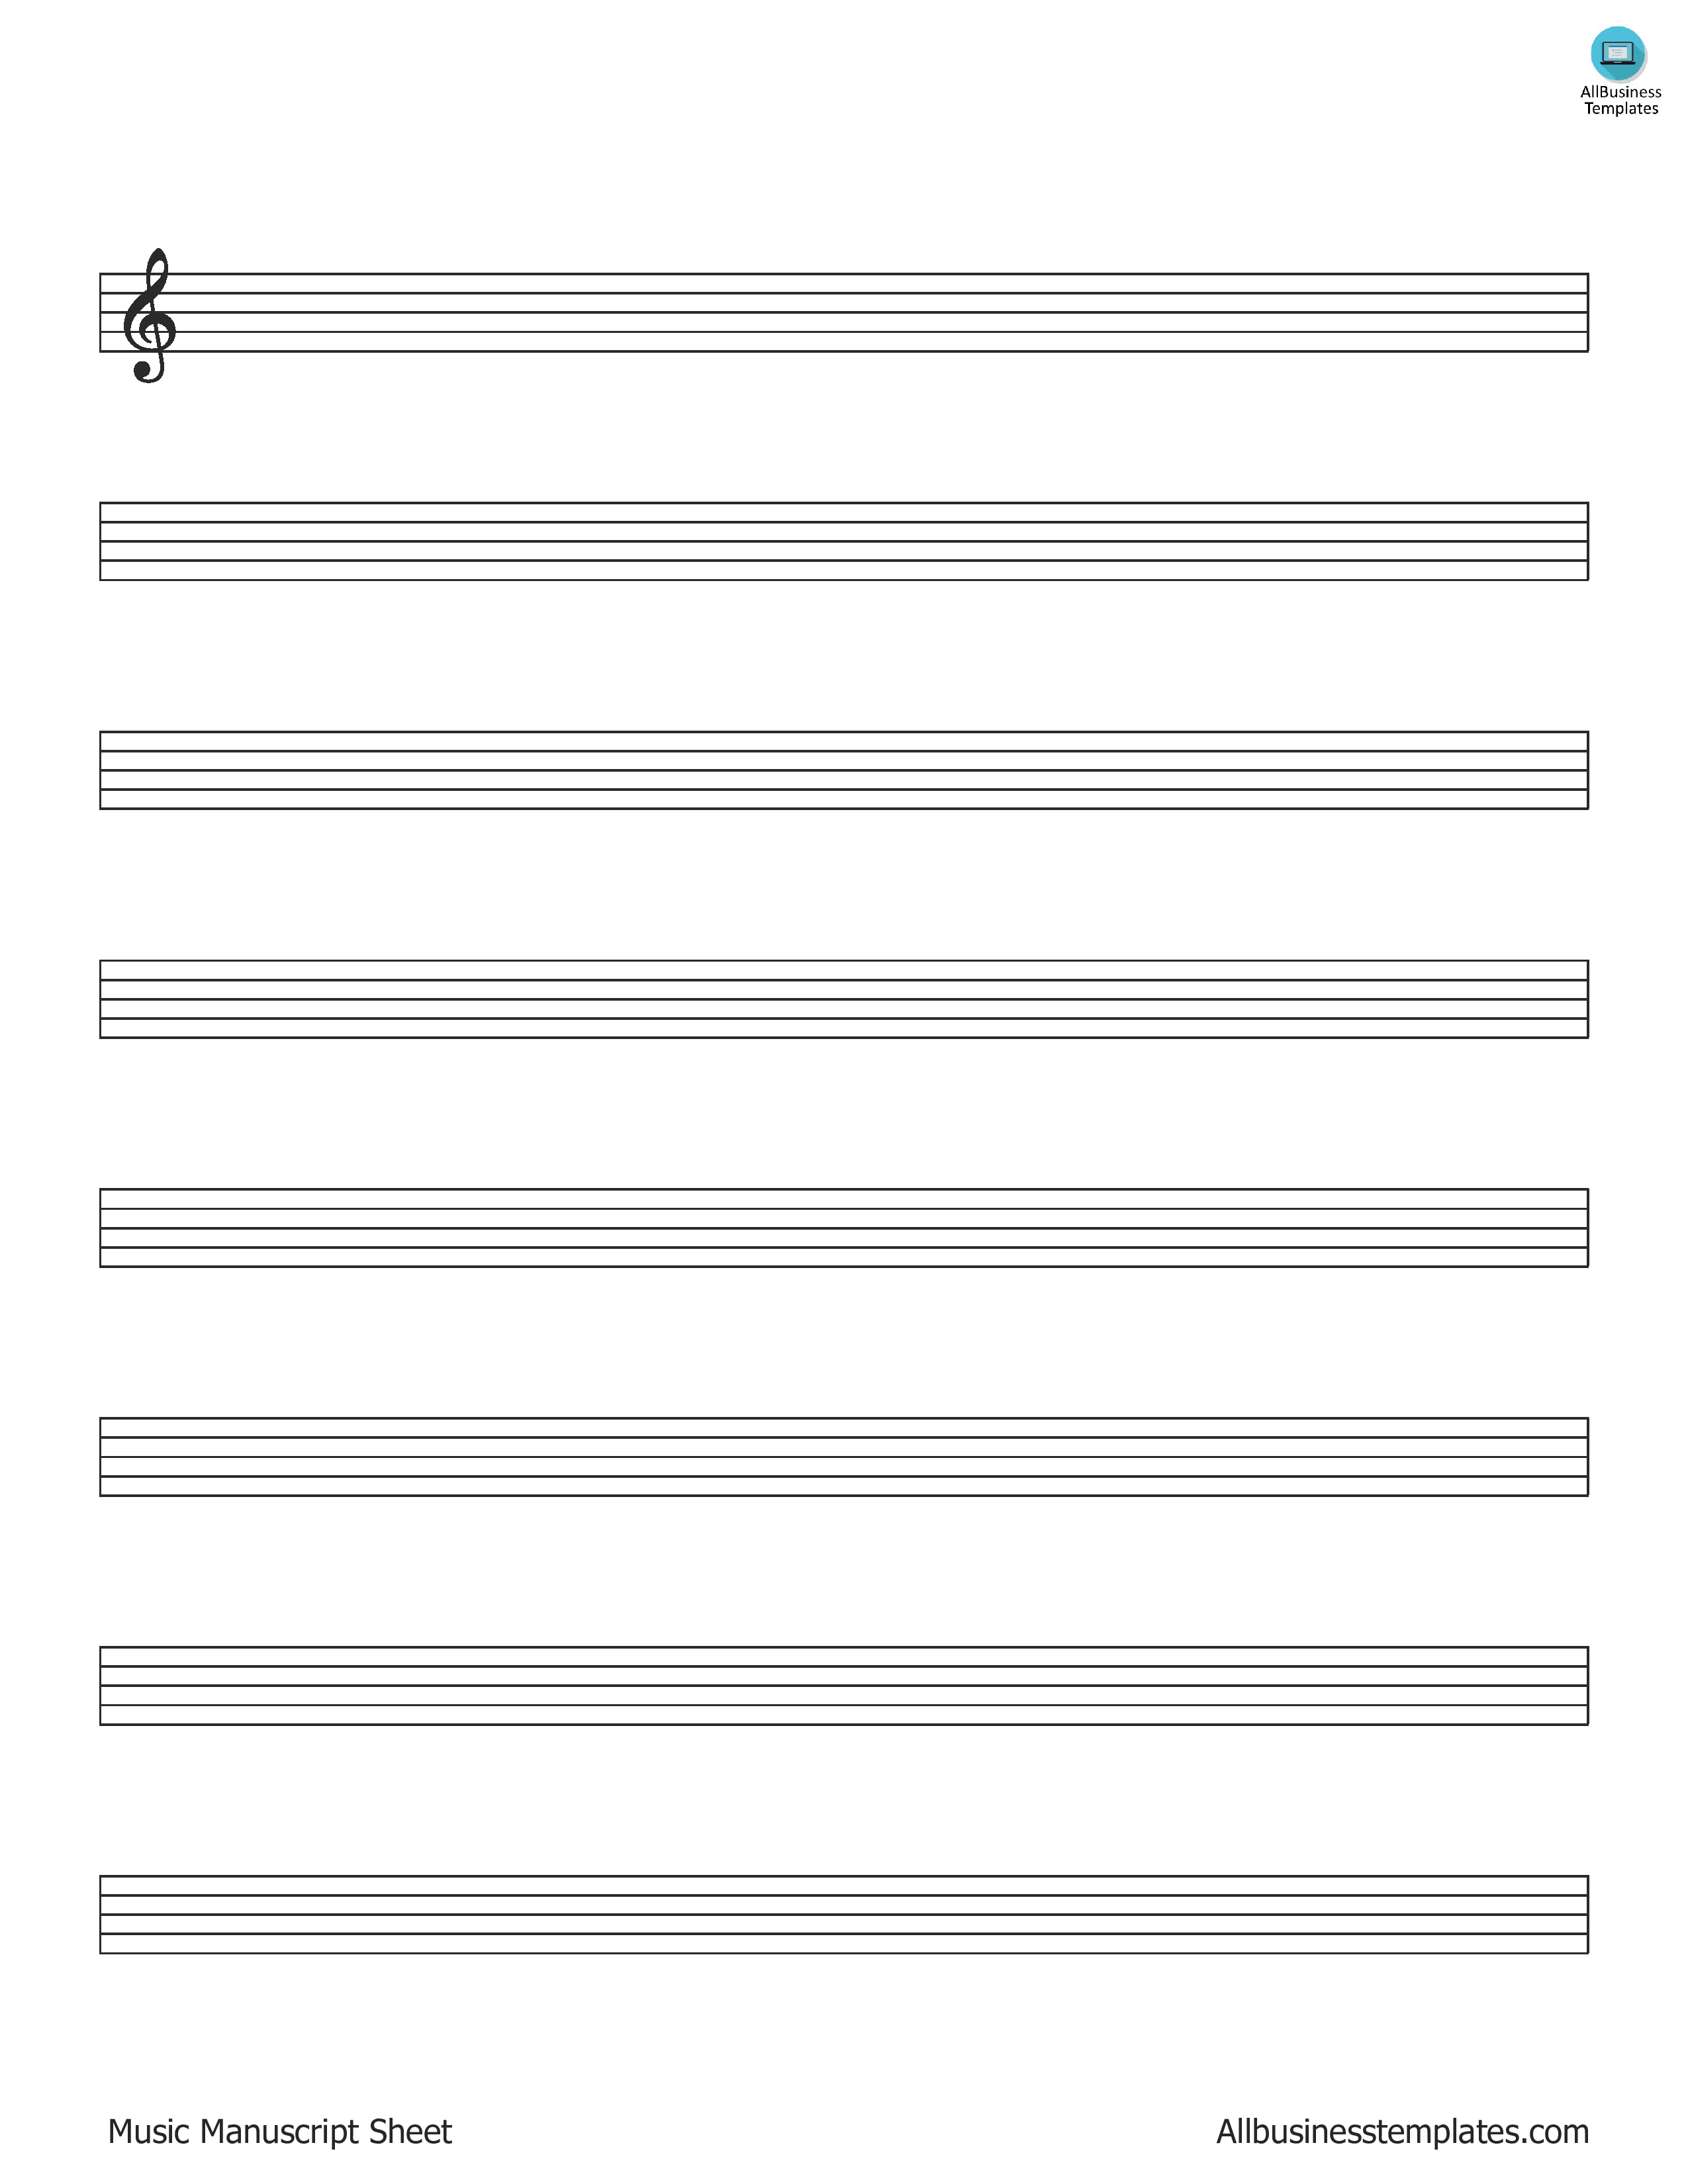 music manuscript paper plantilla imagen principal